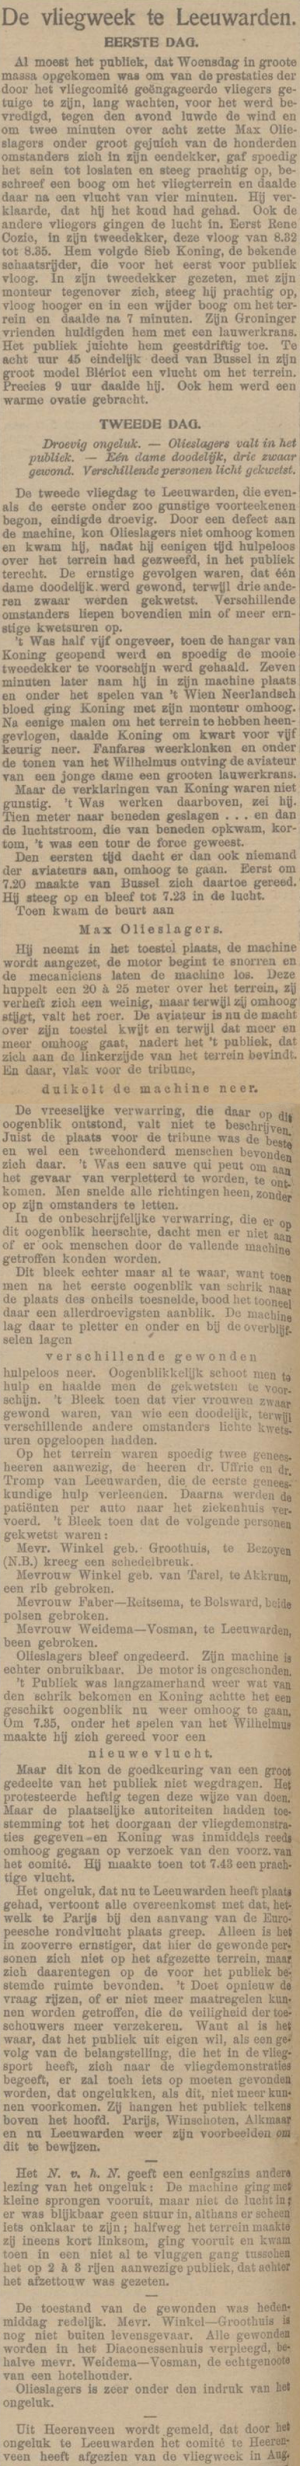 Nieuwe Veendammer courant, 15 juli 1911